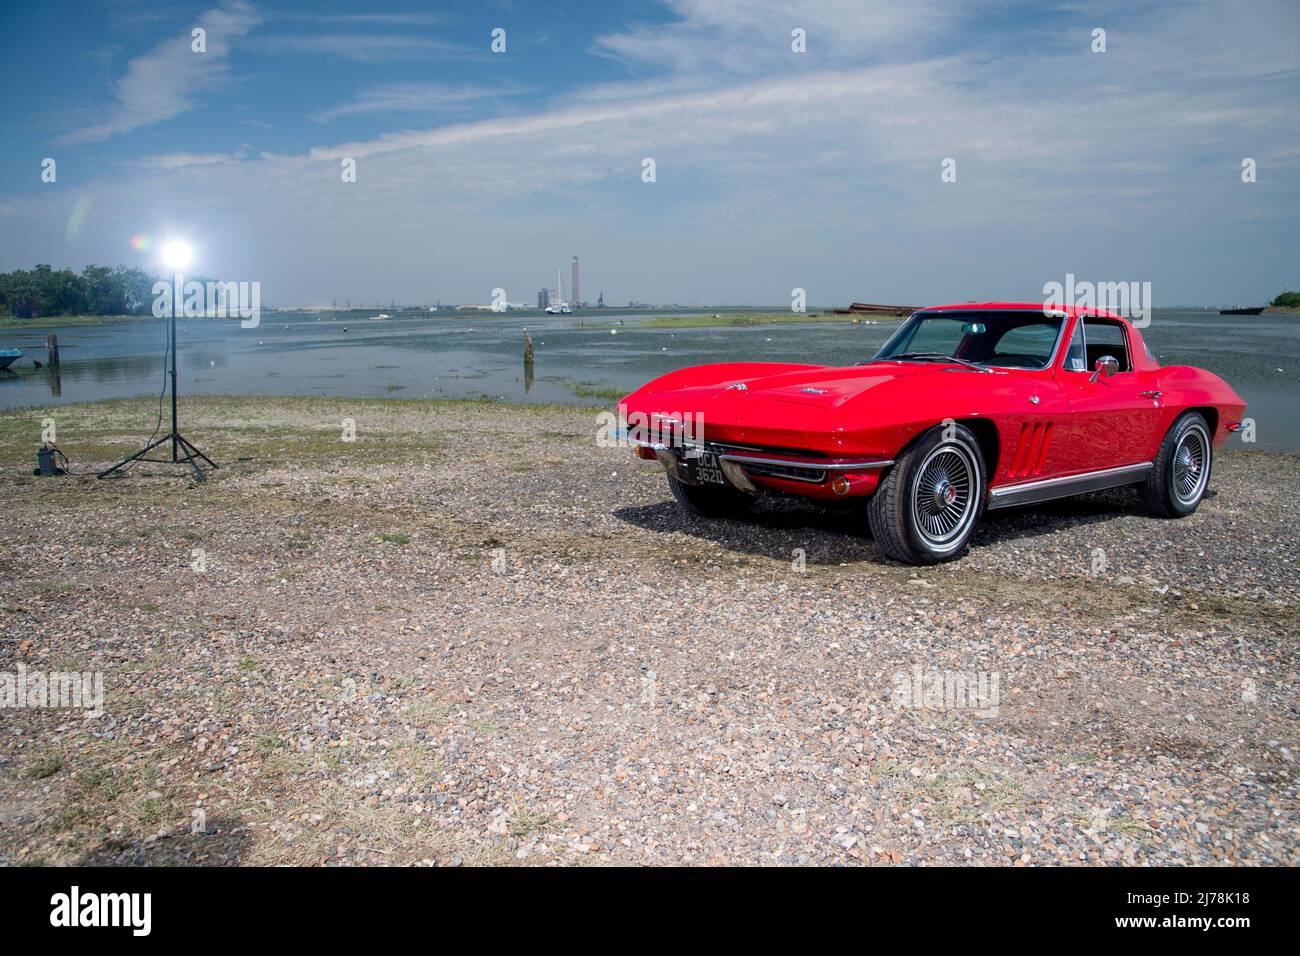 1966 Chevrolet Corvette Stingray C2 seconda generazione classica sportiva americana Foto Stock